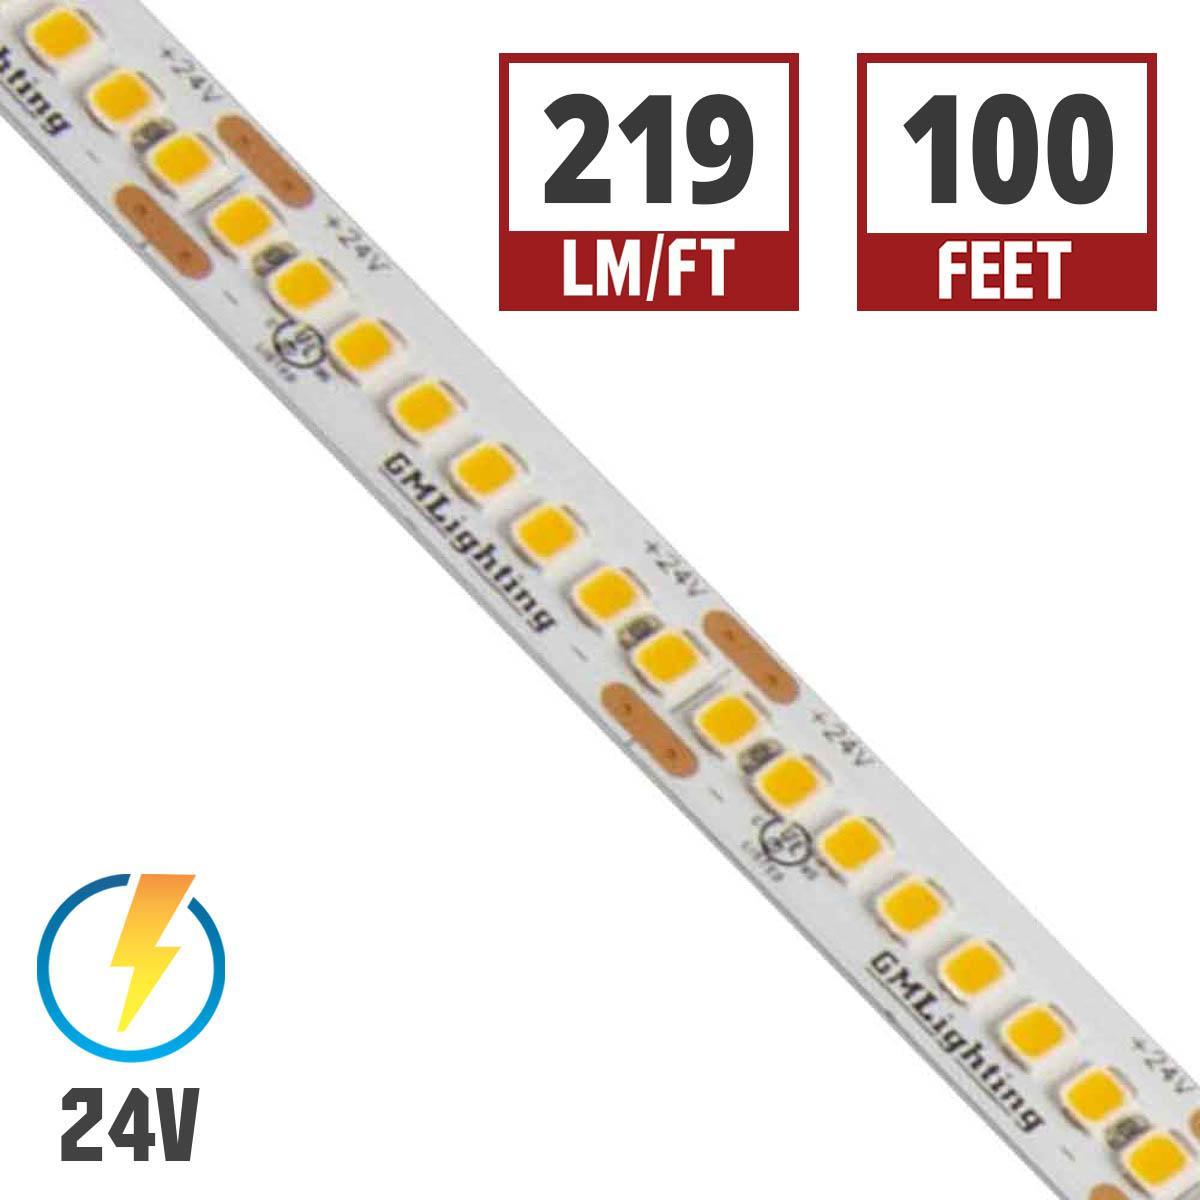 LTR-S Spec LED Strip Light, 220 Lumens per Ft, 2.5 watts per Ft, 24V - Bees Lighting